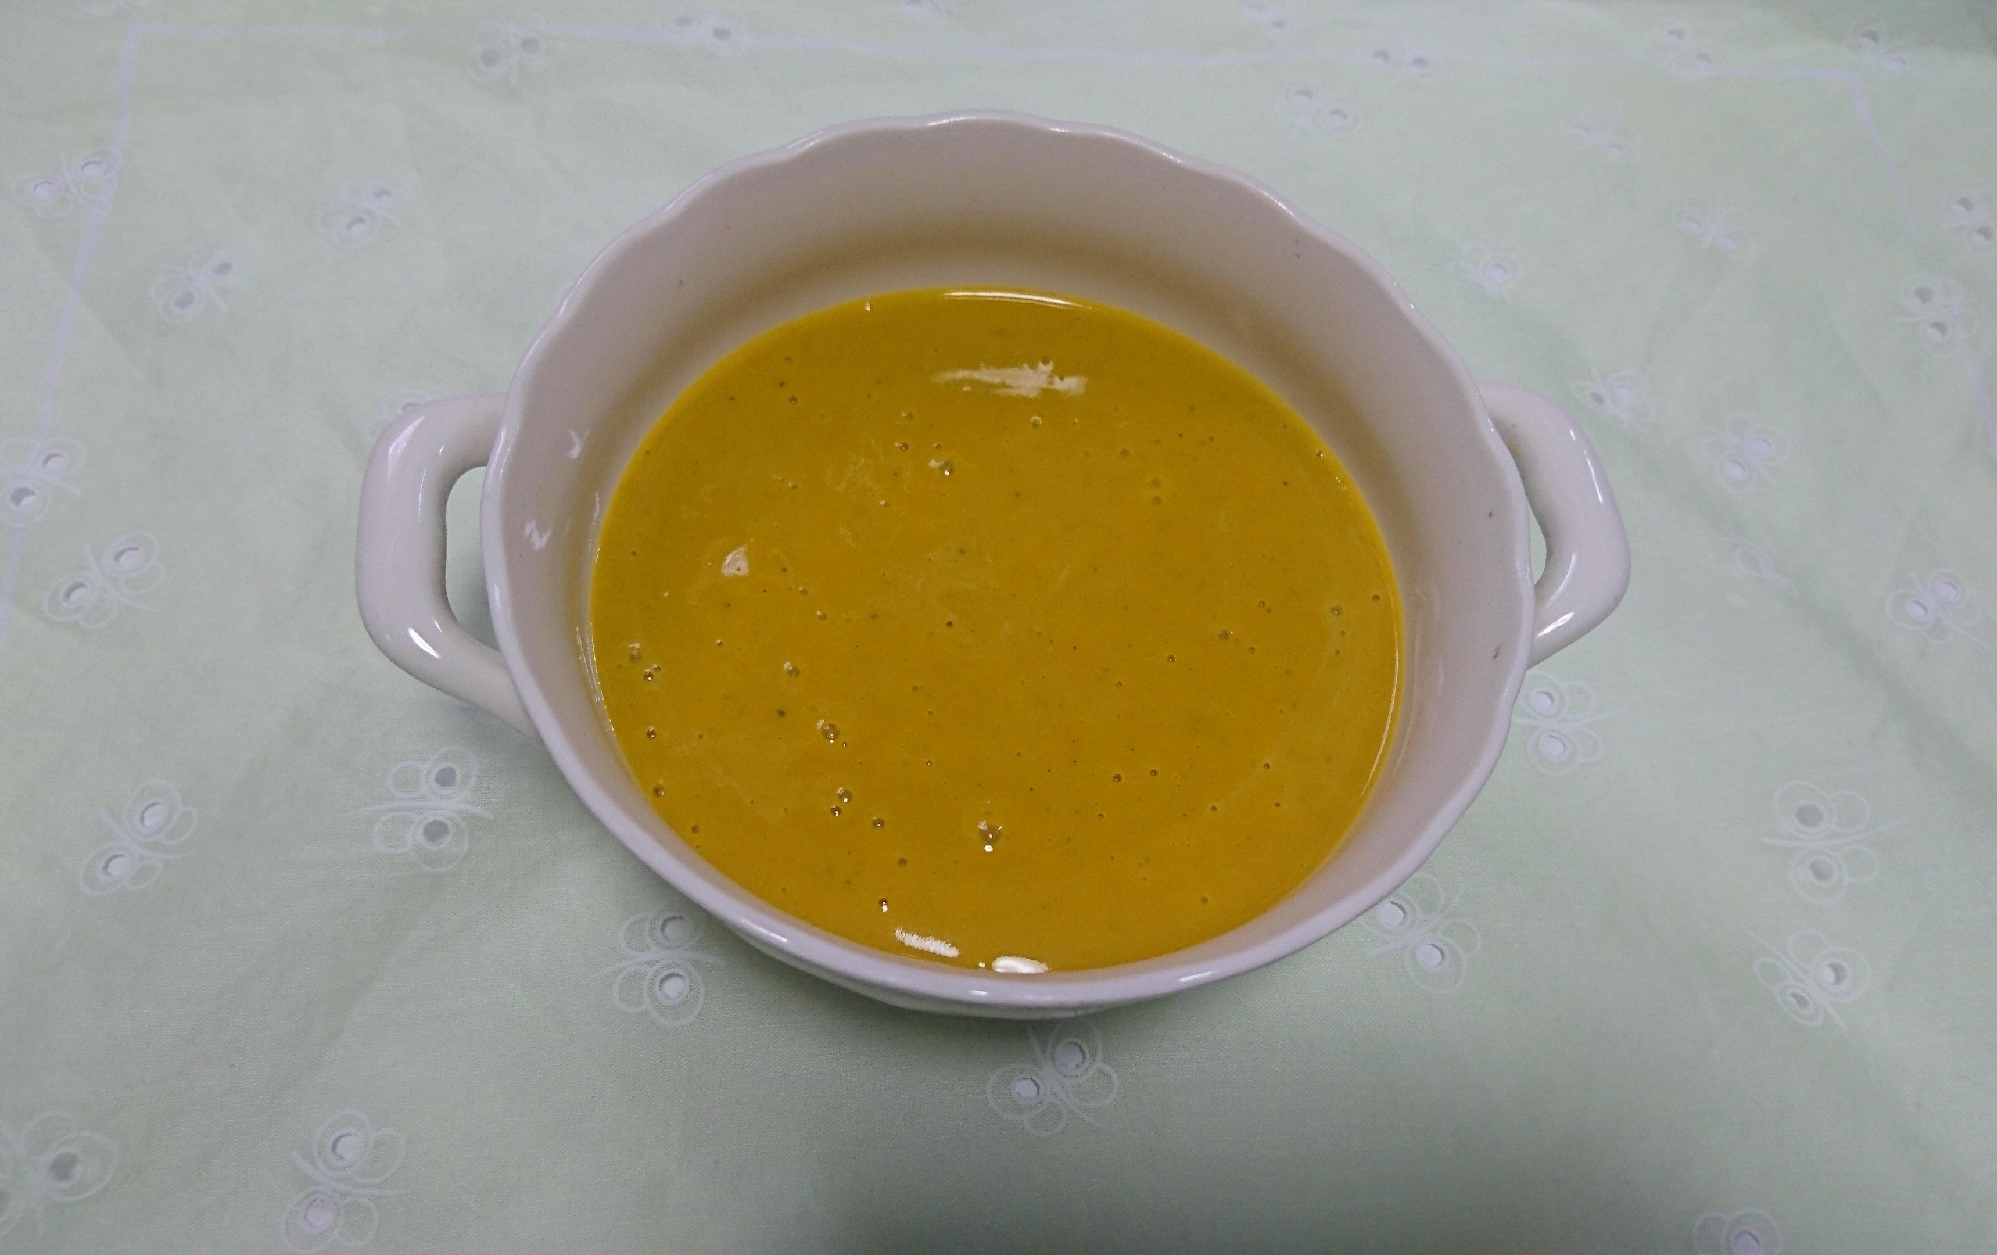 かぼちゃのカレースープ